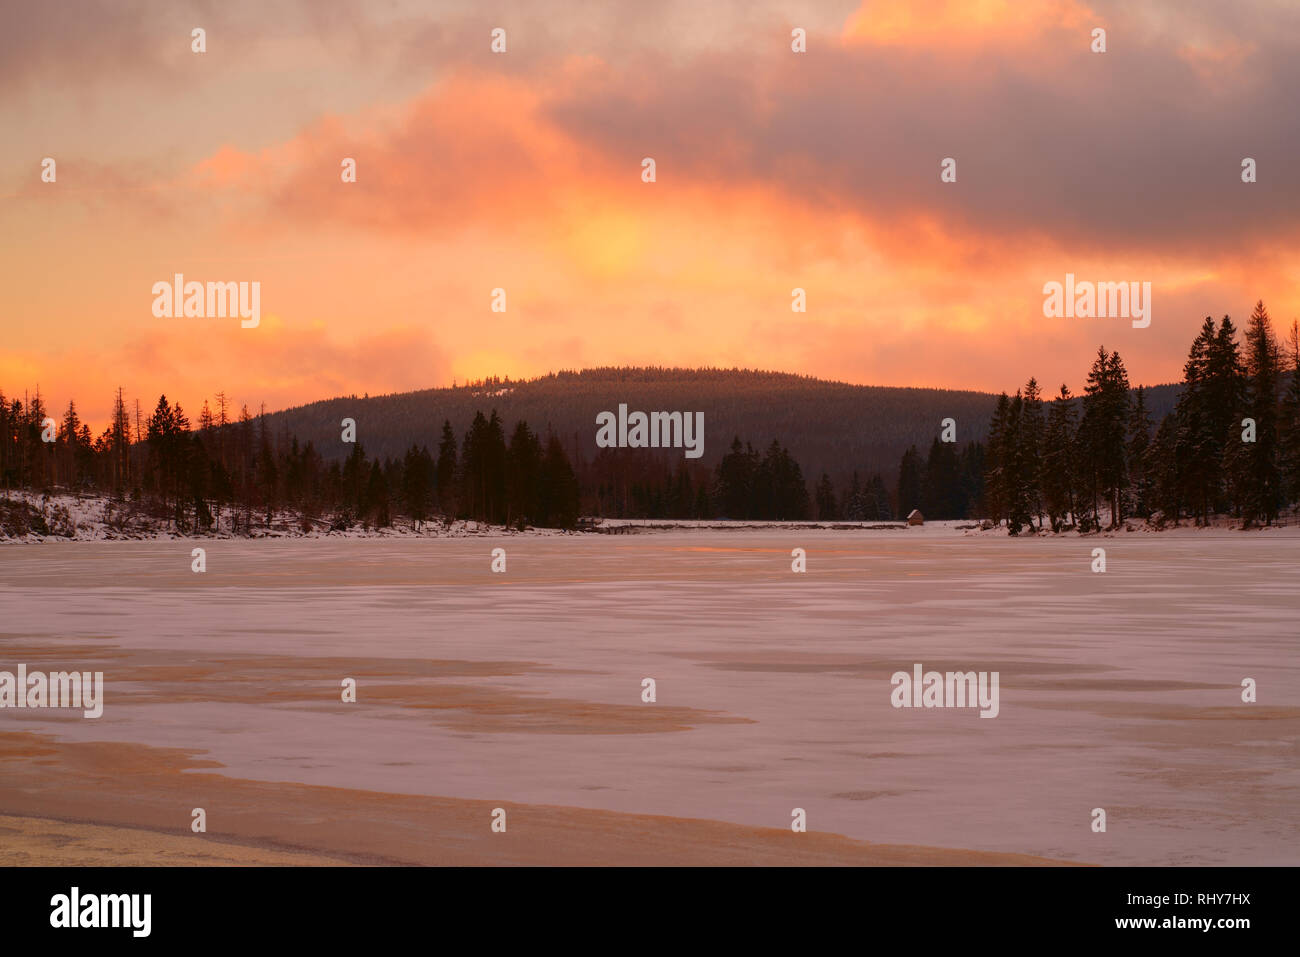 Sonnenuntergang über einem verschneiten See im Wald. Winterlandschaft in schönen Pastellfarben, See Oderteich, Nationalpark Harz, Niedersachsen, Deutschland. Stockfoto